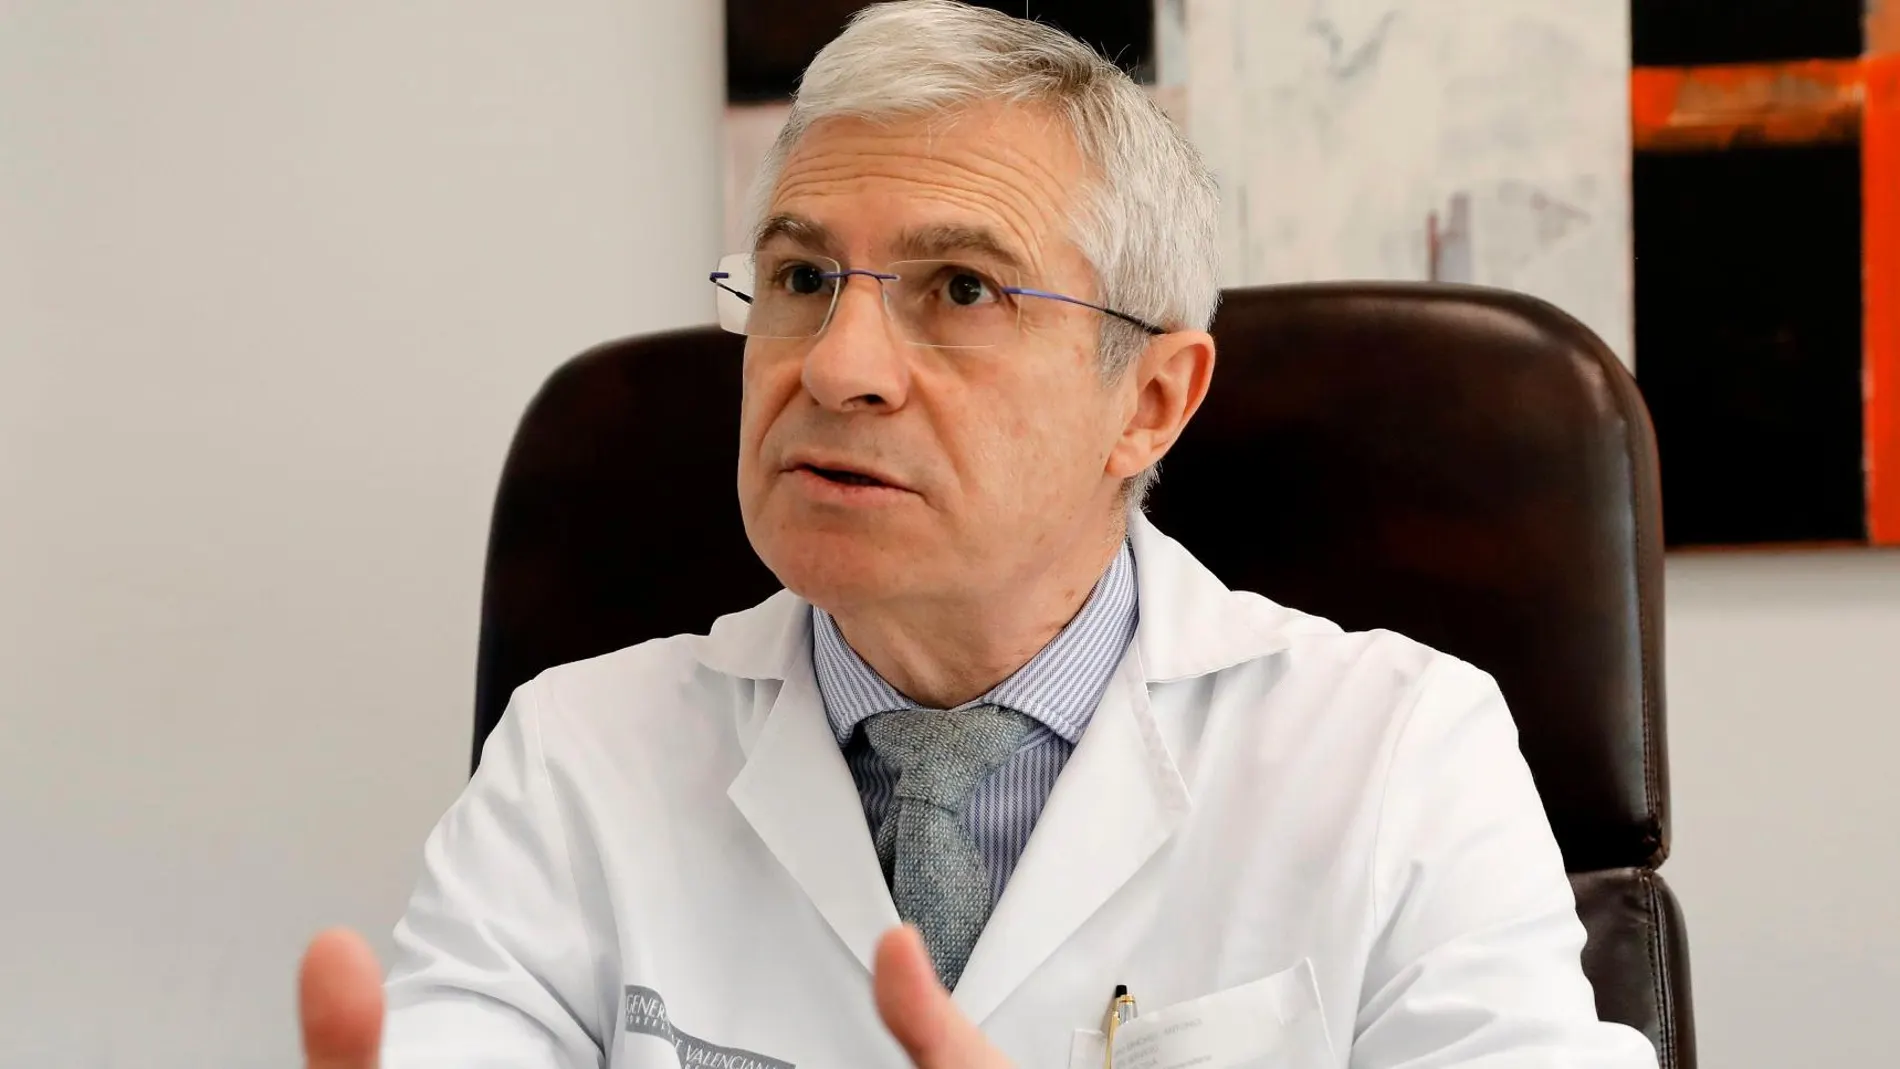 El doctor Antonio Cano, nuevo presidente electo de la Sociedad Europea de Menopausia y Andropausia. Cano es el primer español en ocupar este cargo, afirma que la menopausia actual «no tiene nada ver» con la del siglo XX. EFE